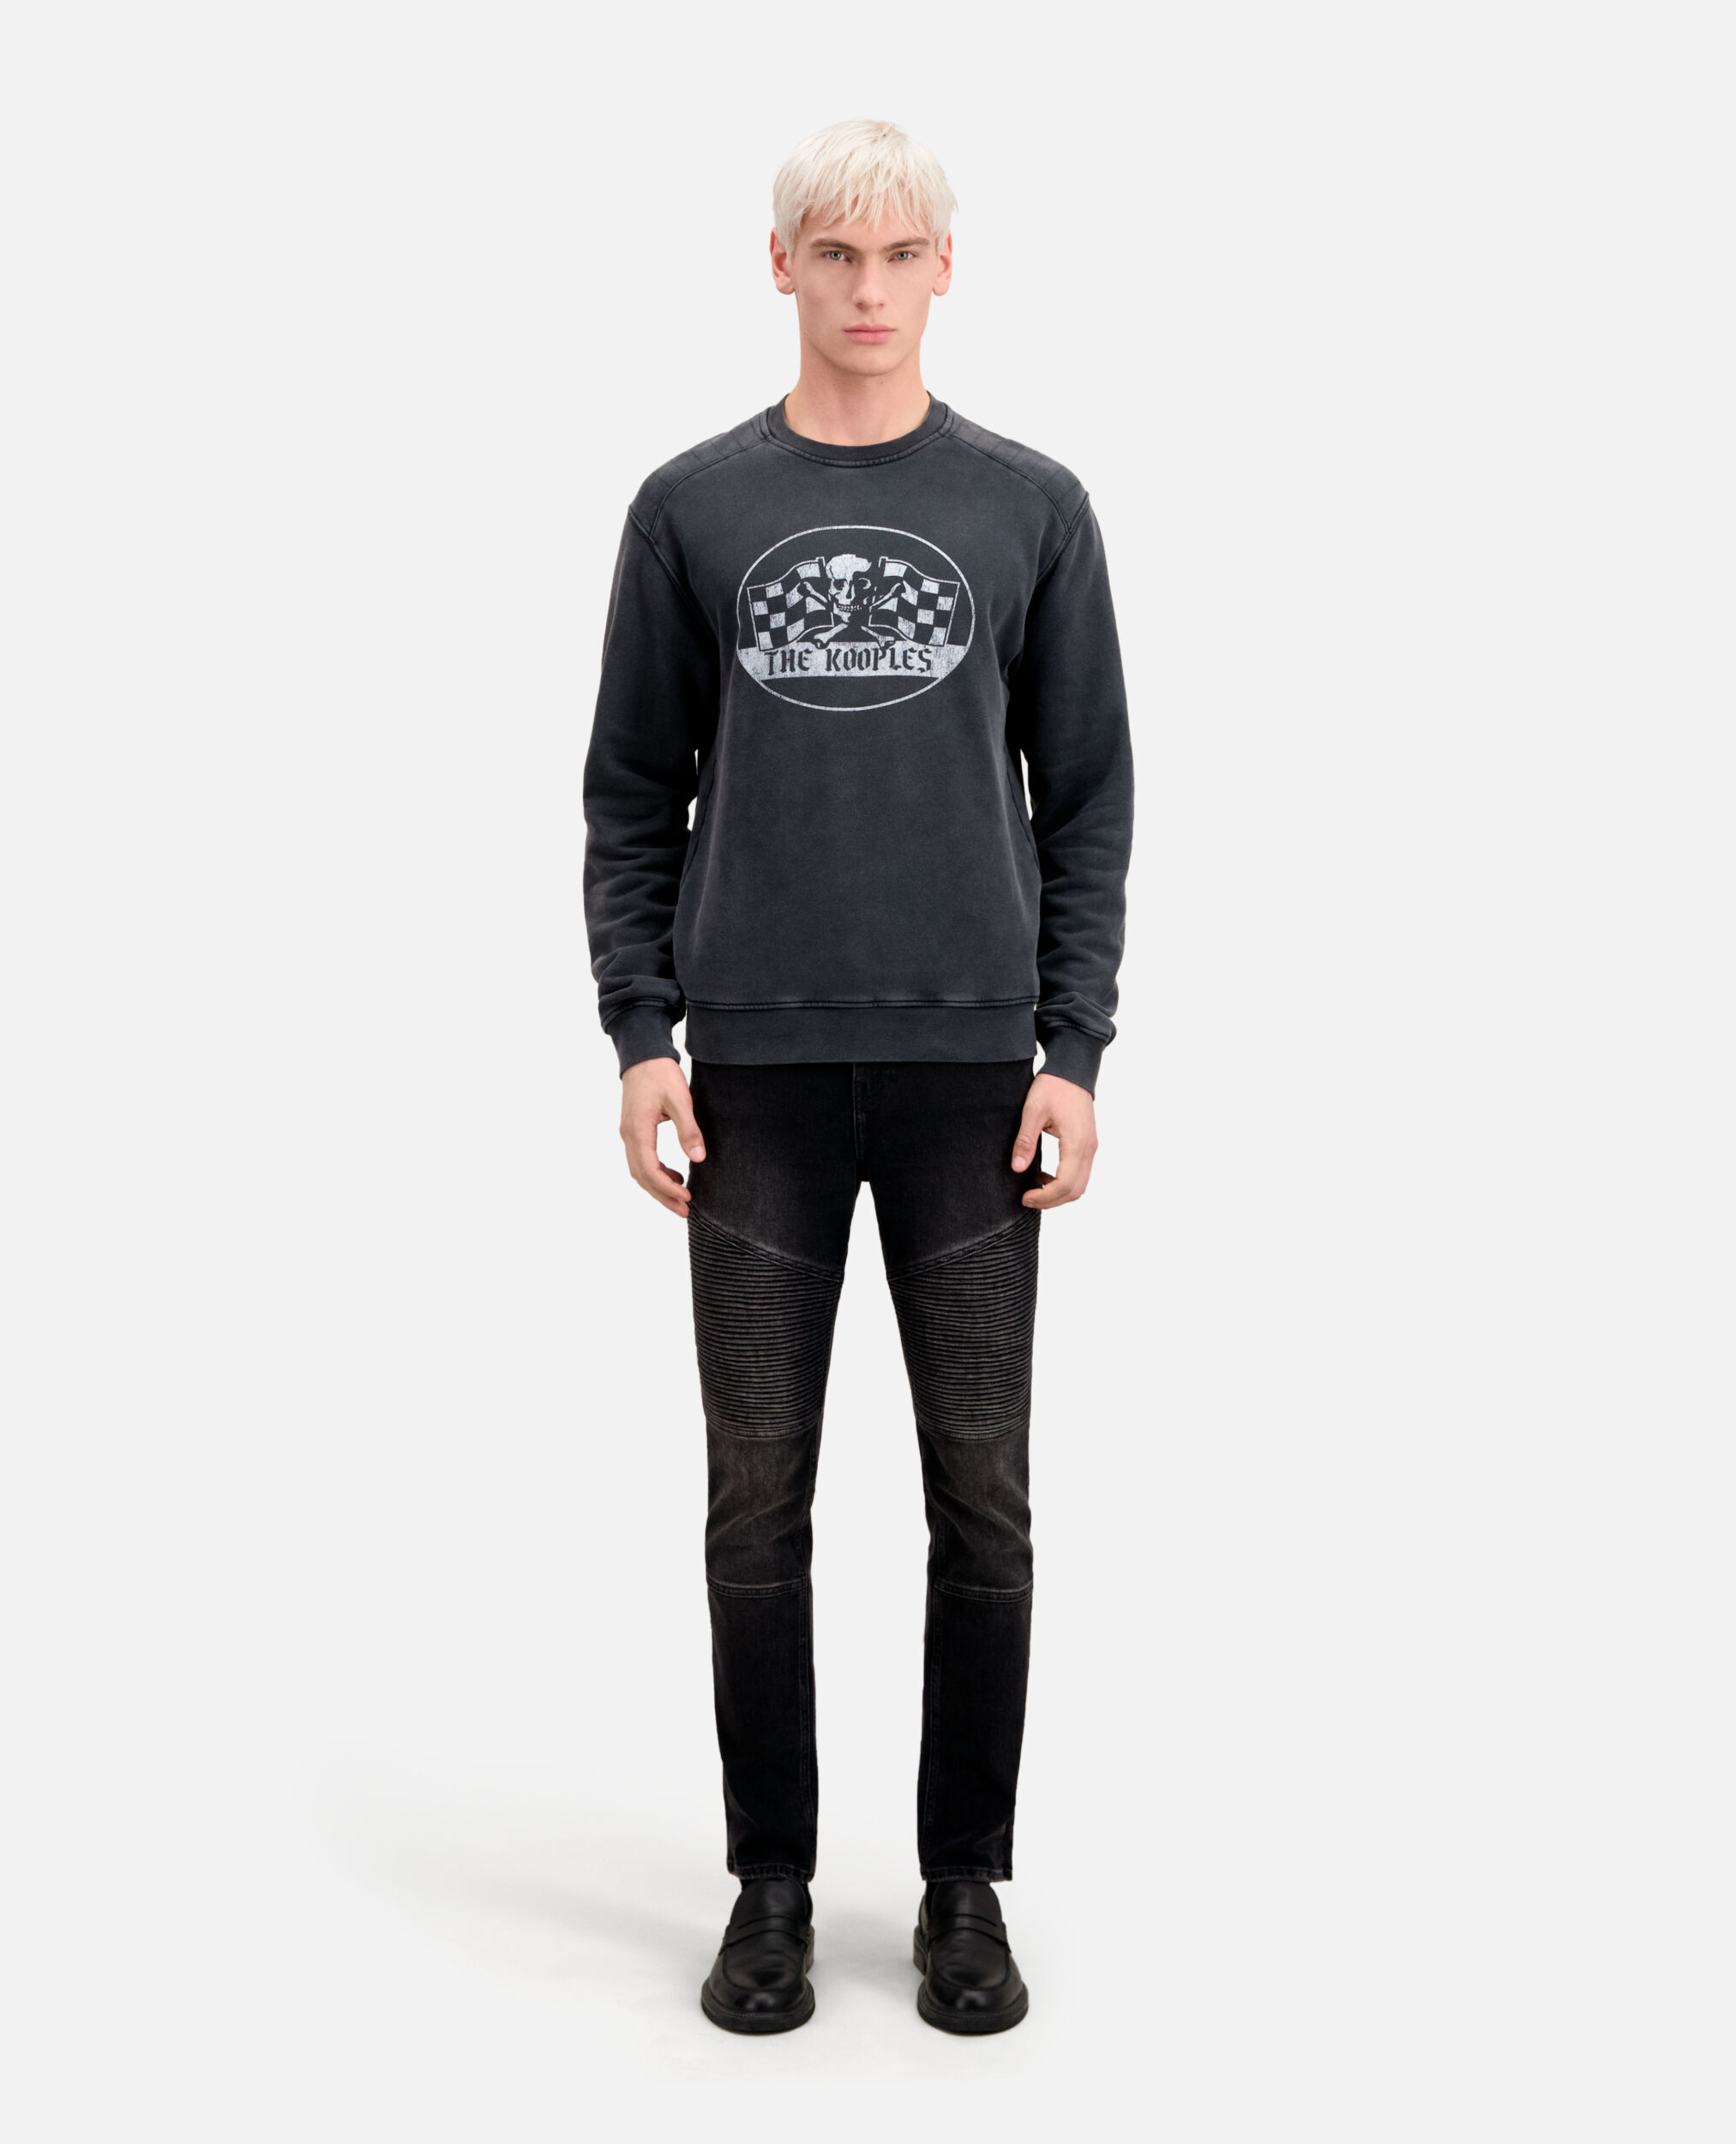 Herren Schwarzes Sweatshirt mit Racing-Skull-Siebdruck, BLACK WASHED, hi-res image number null